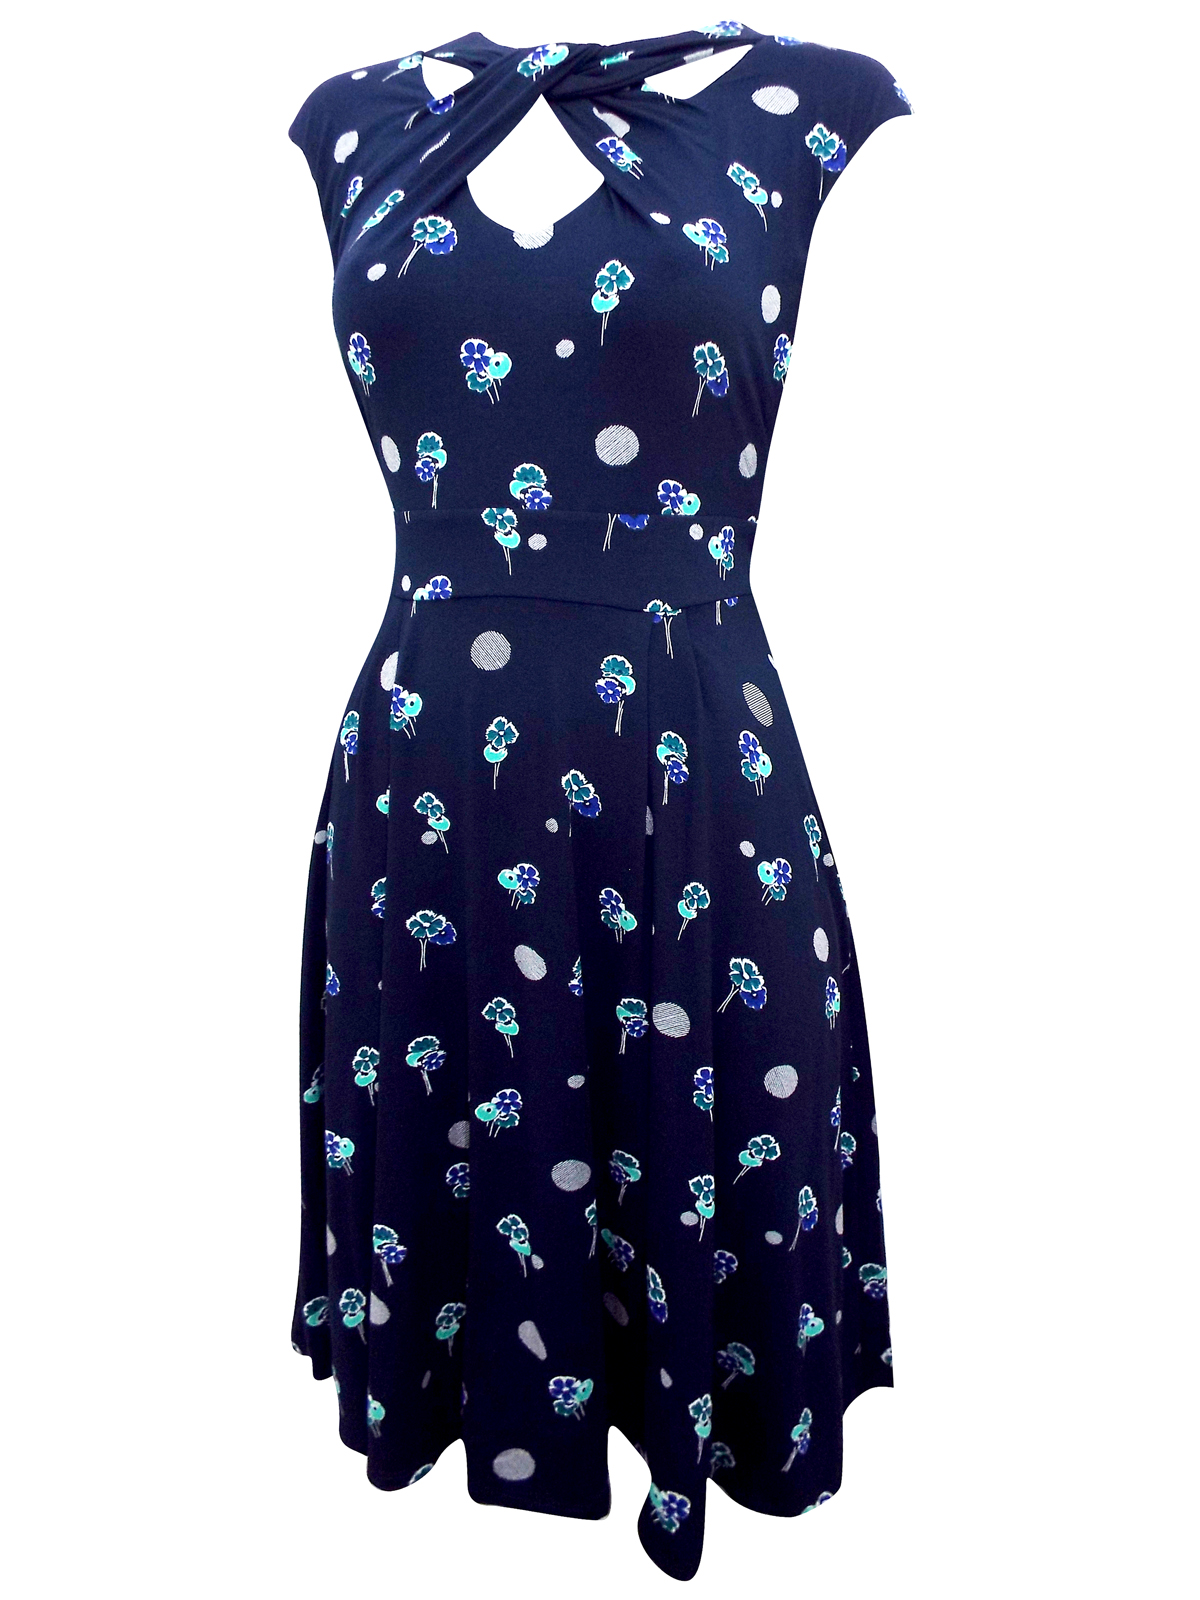 M&Co - - M&C0 BLUE Twist Front Printed Tea Dress - Size 12